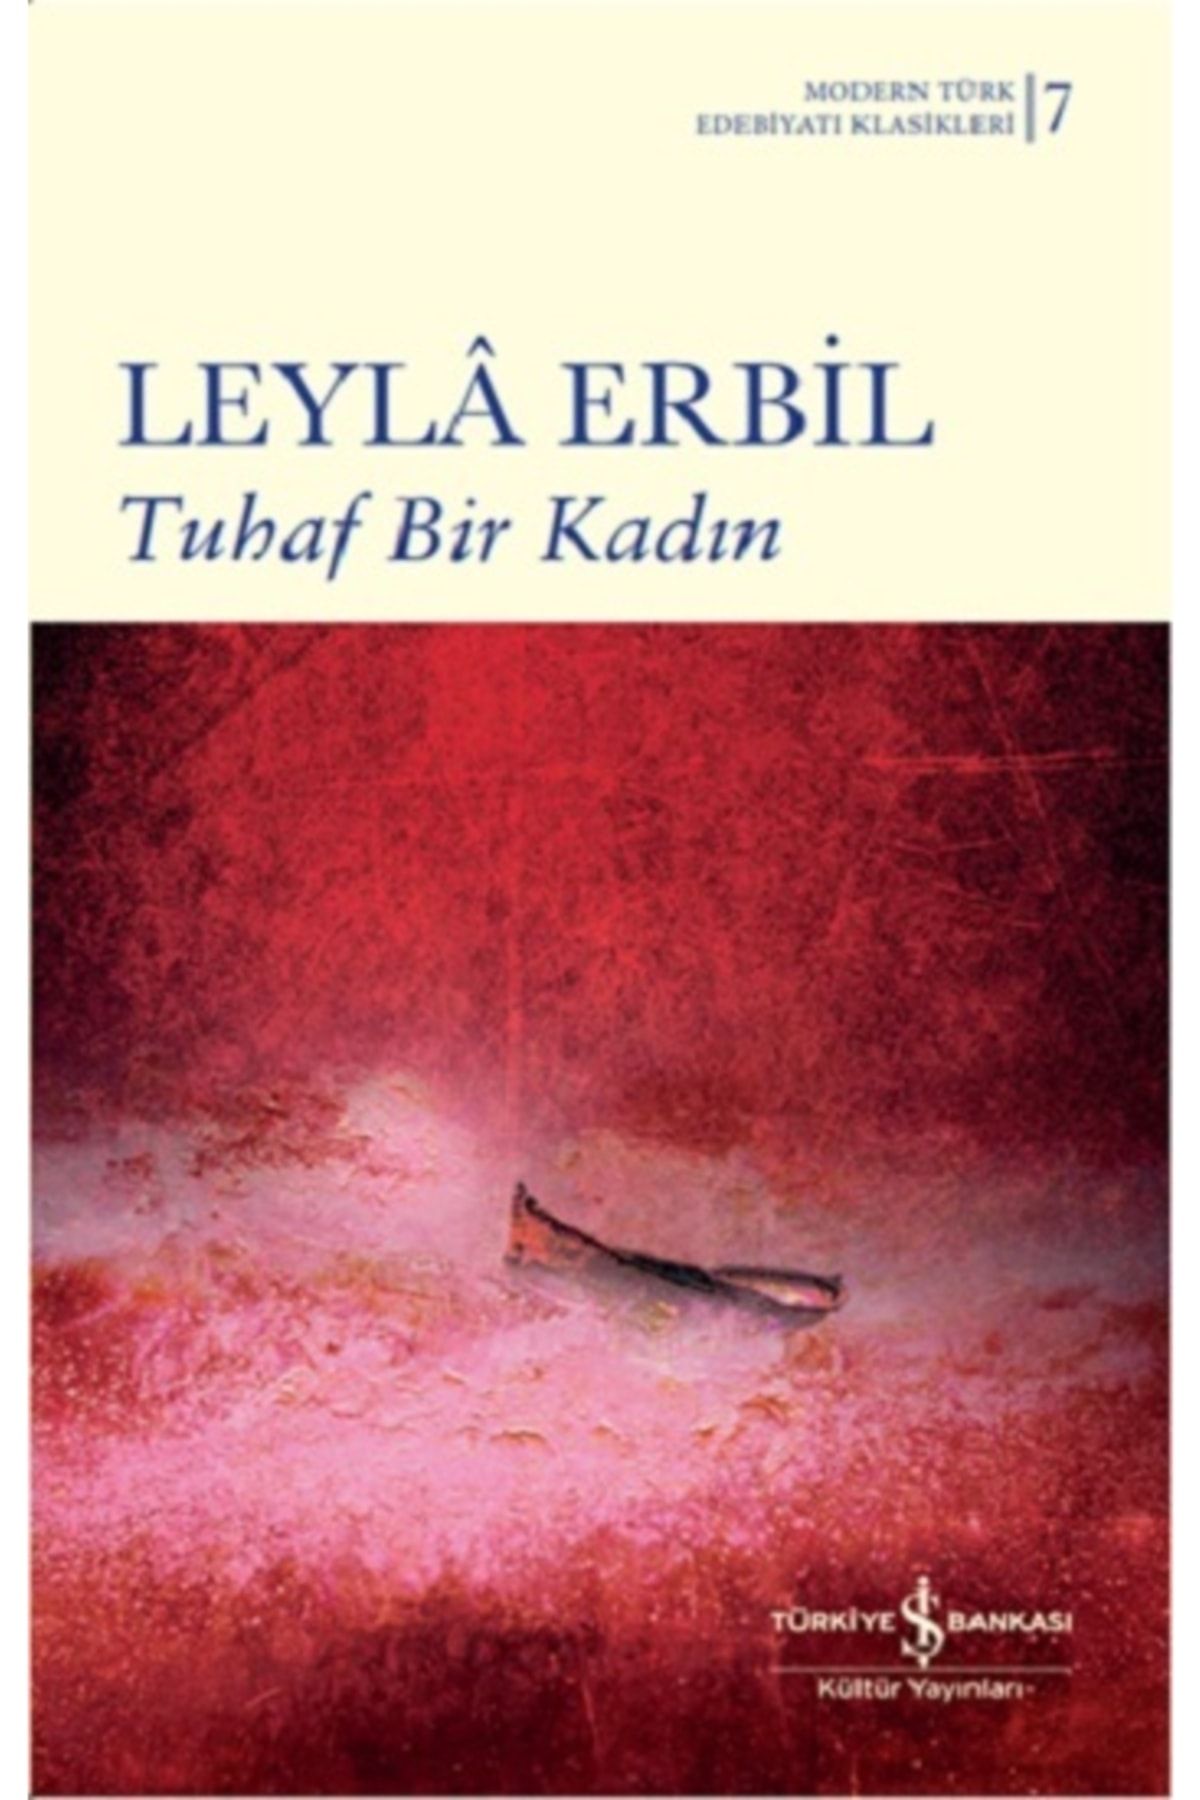 Türkiye İş Bankası Kültür Yayınları Tuhaf Bir Kadın (ciltli) - Leyla Erbil